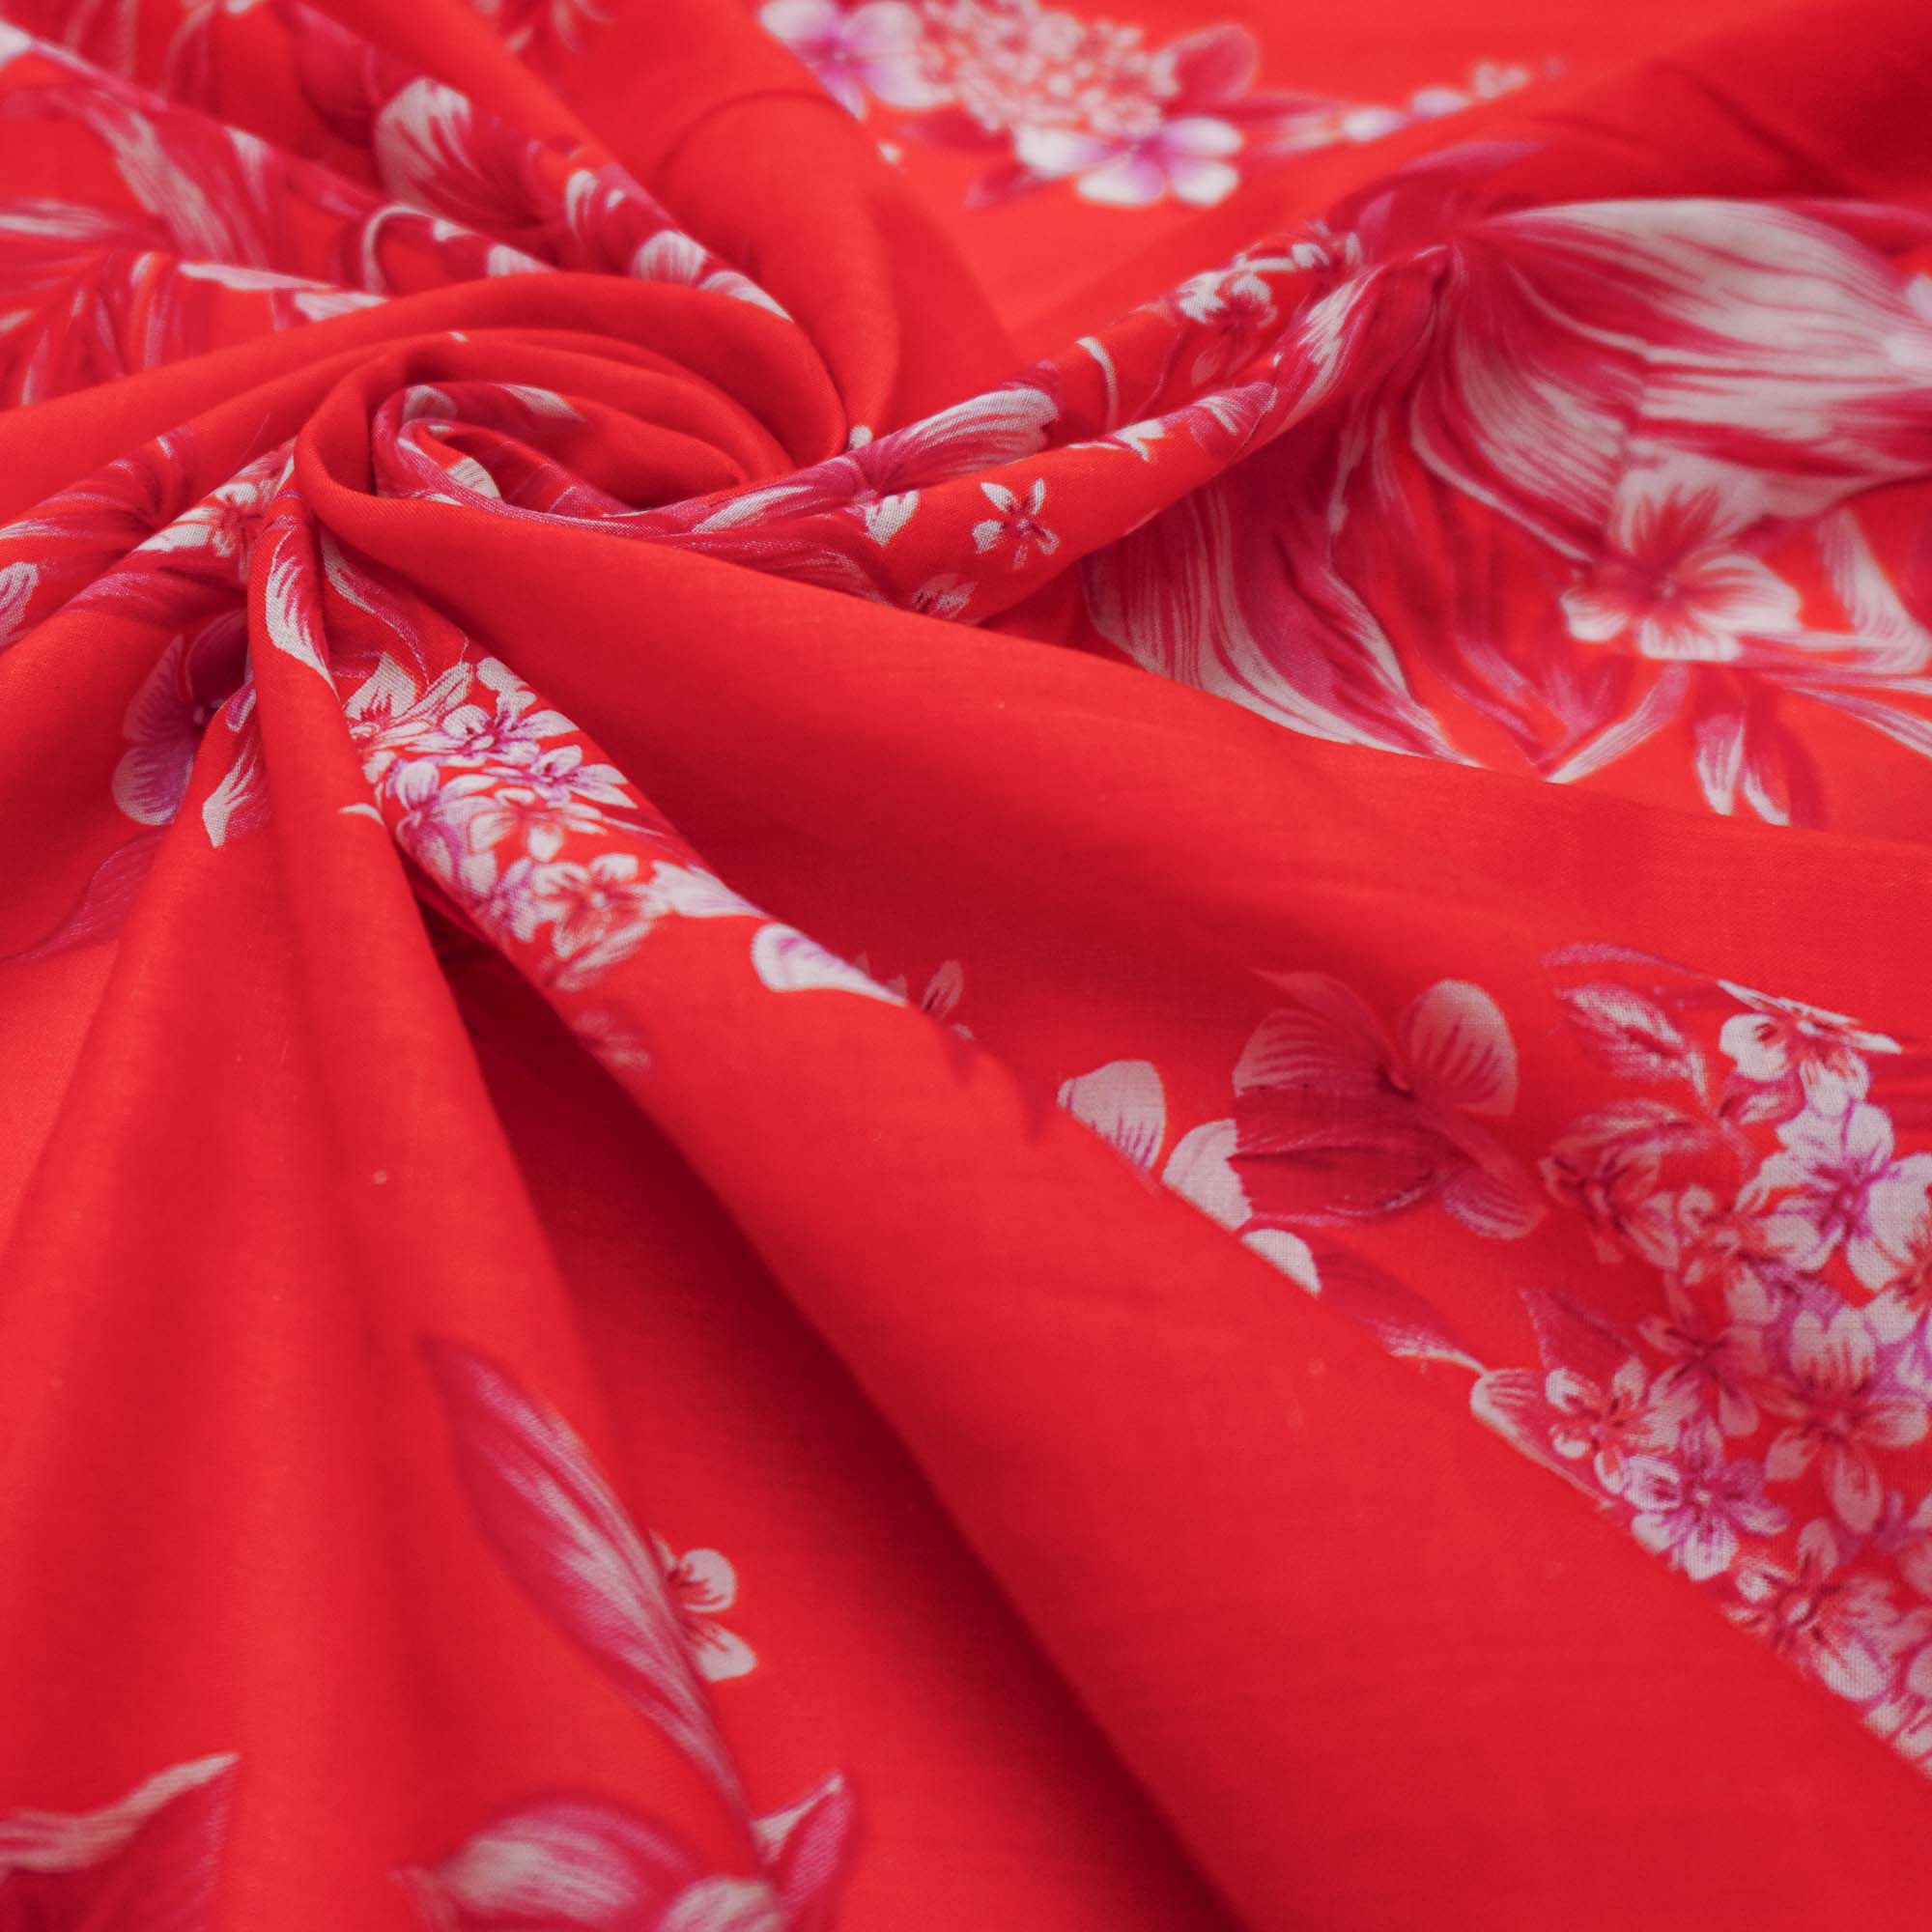 Tecido cambraia de algodão puro vermelho estampado floral (tecido italiano legítimo)